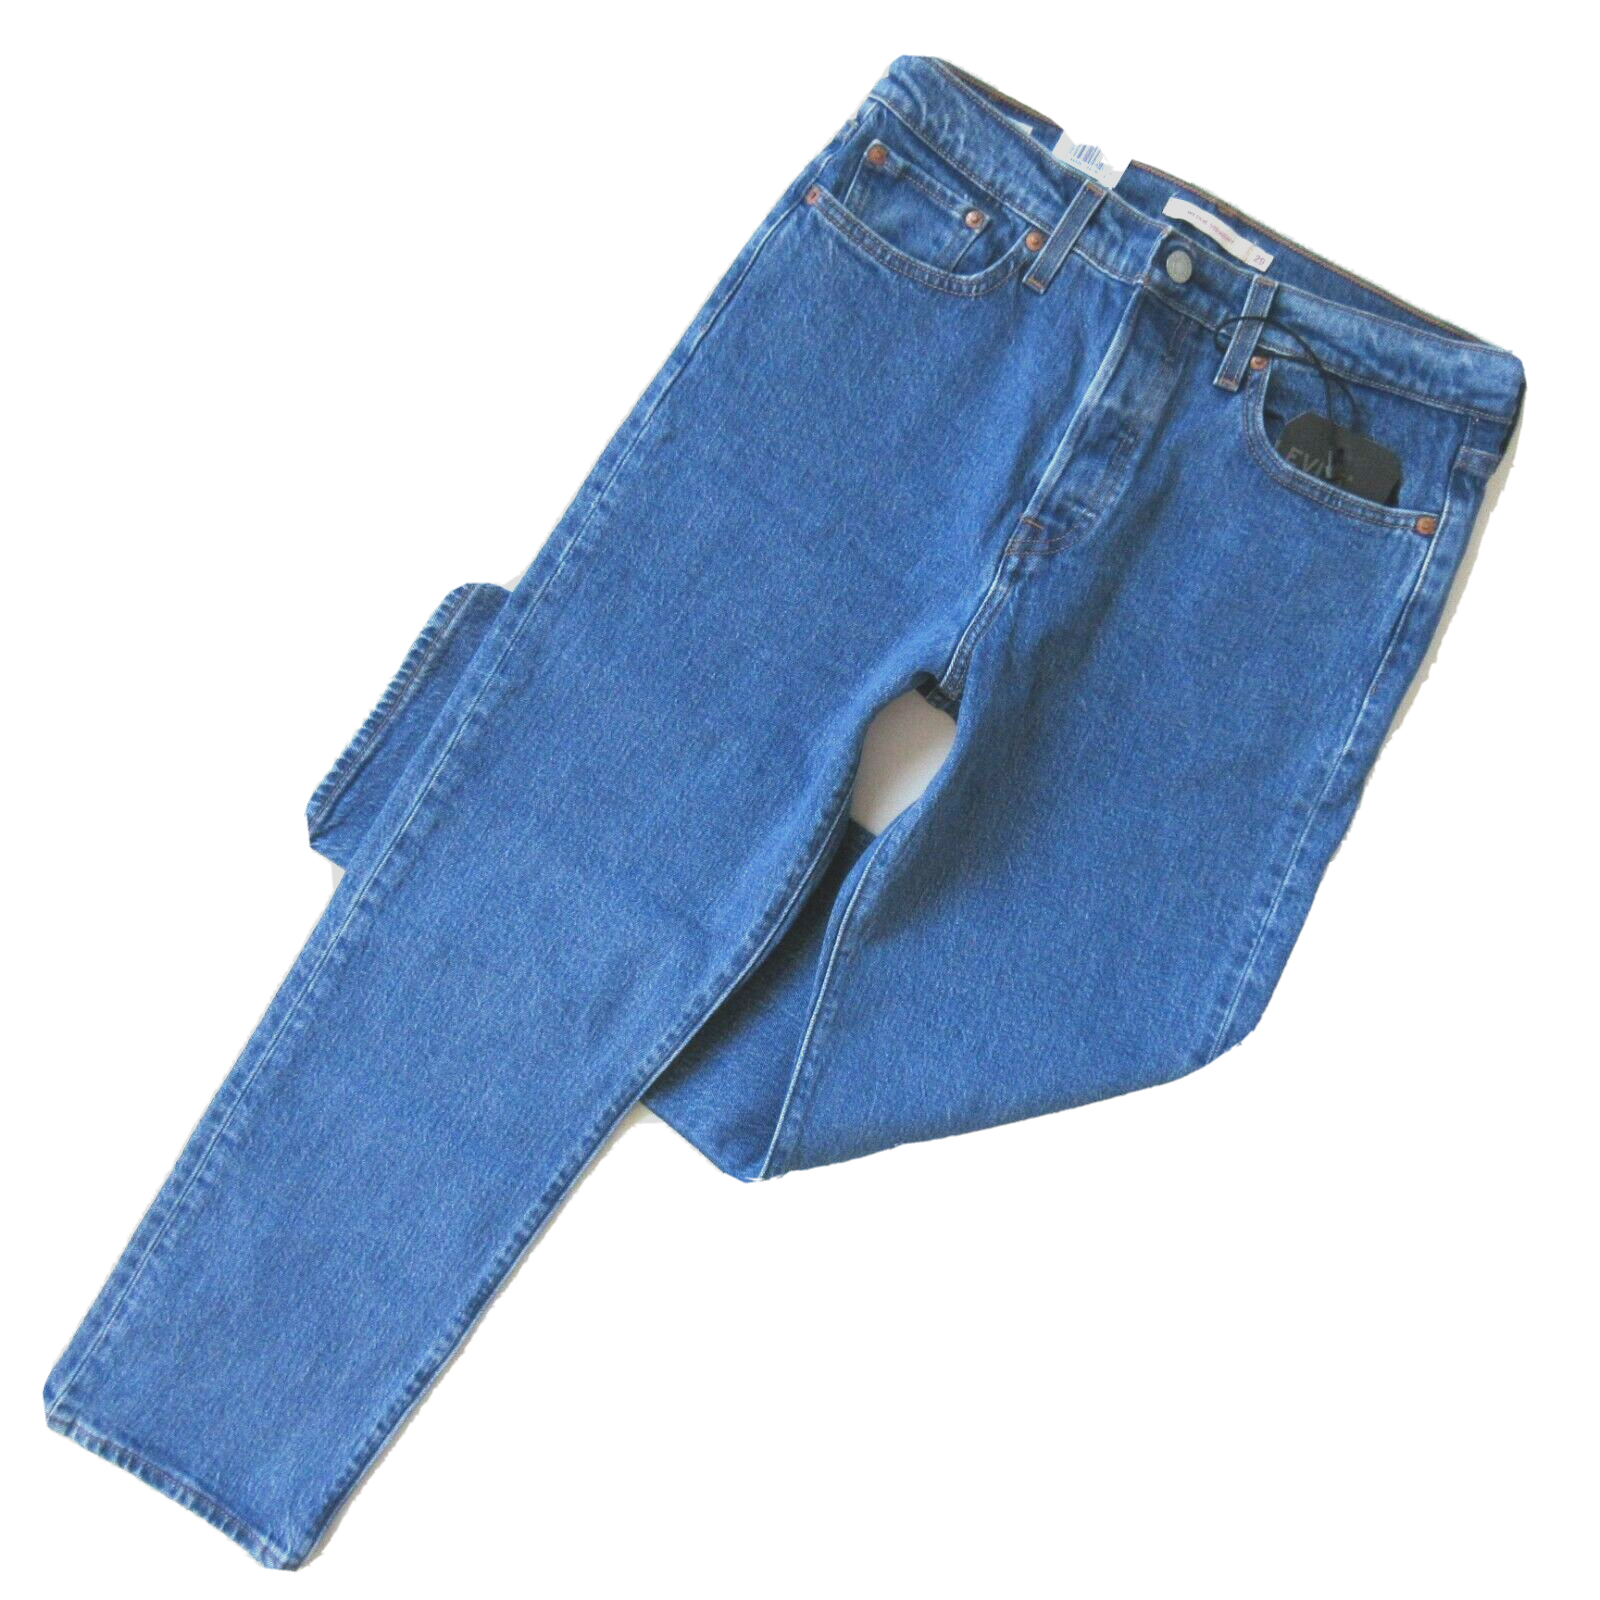 NWT Levi's Wedgie Straight in Jive Stonewash Stretch Denim Crop Jeans 29  194328047196 | eBay